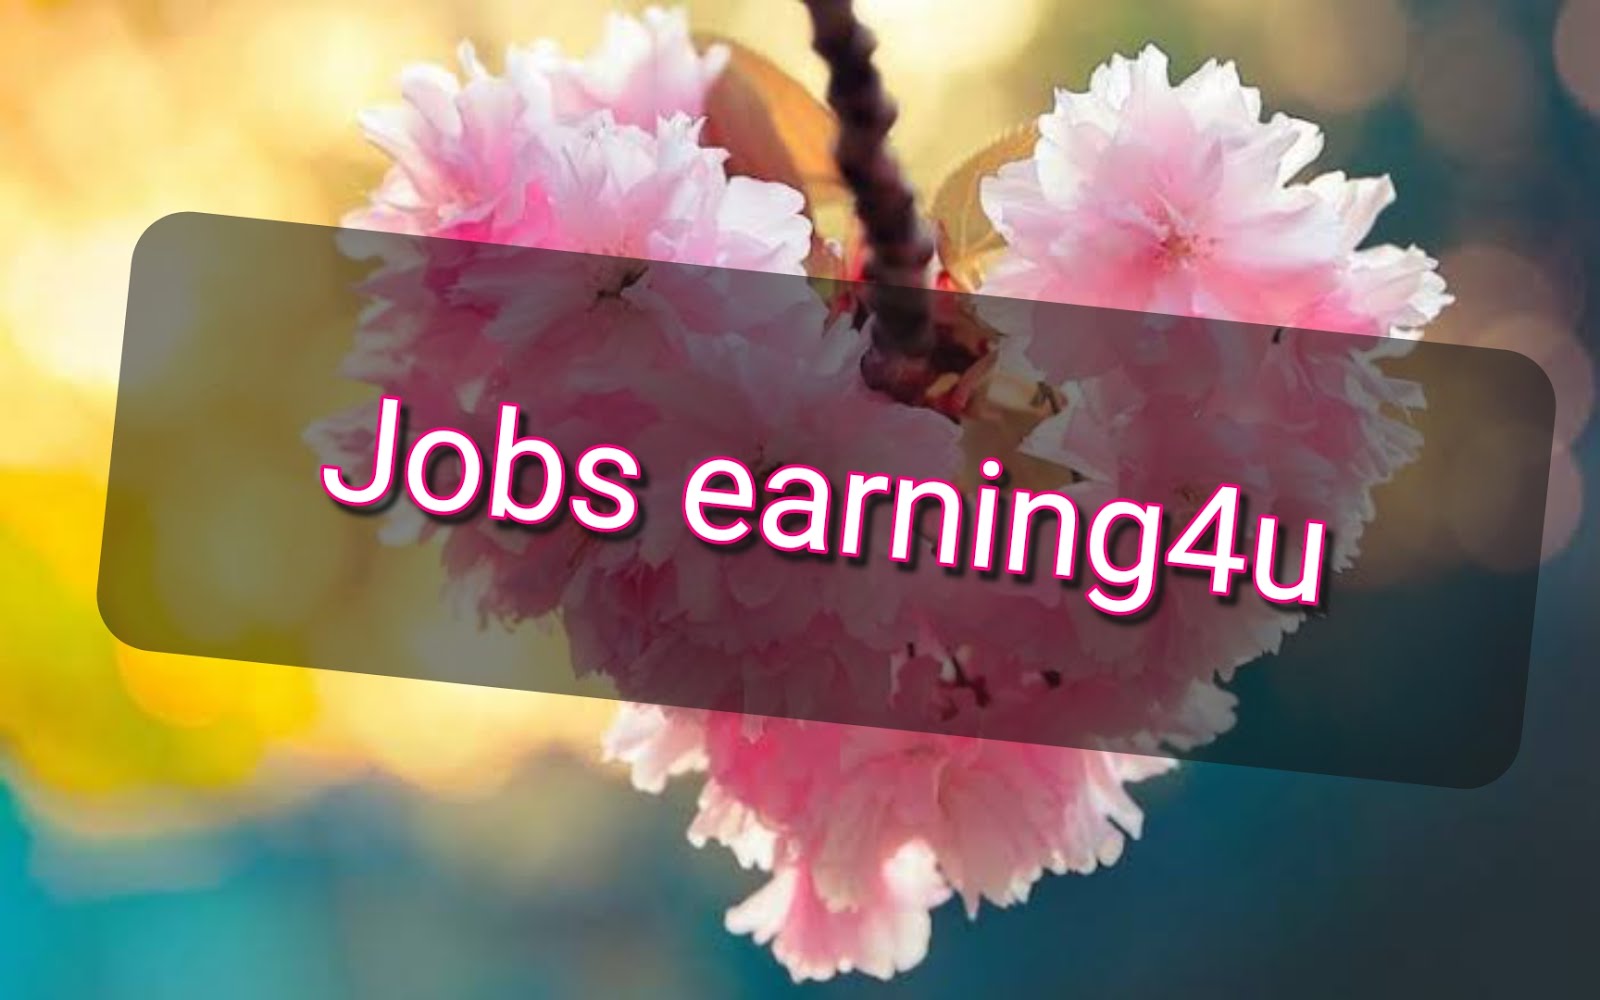 Jobs earning4u